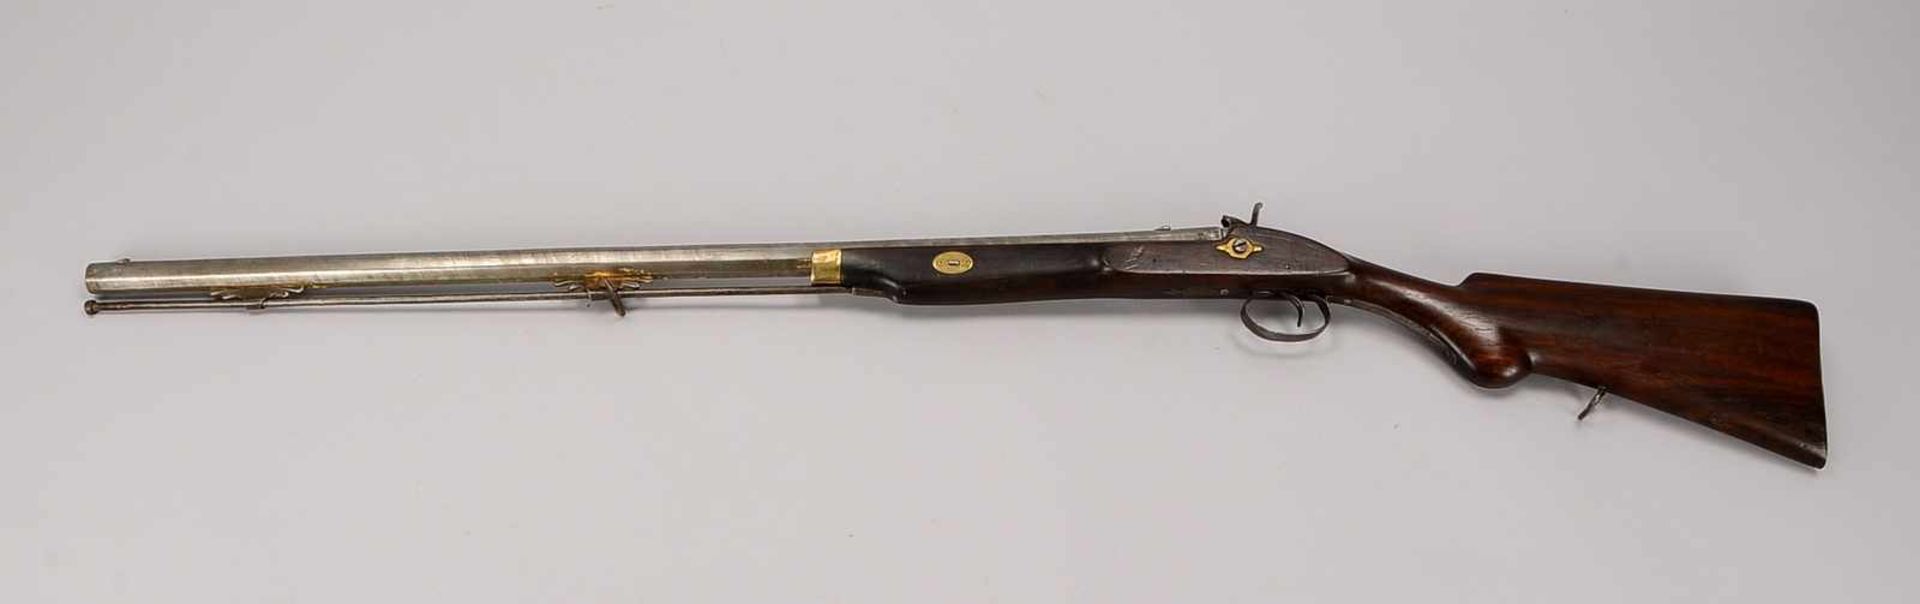 Perkussionsgewehr, 19. Jahrhundert, Vorderlader, 8-kantiger Lauf/nummeriert '241', Beschläge Messing